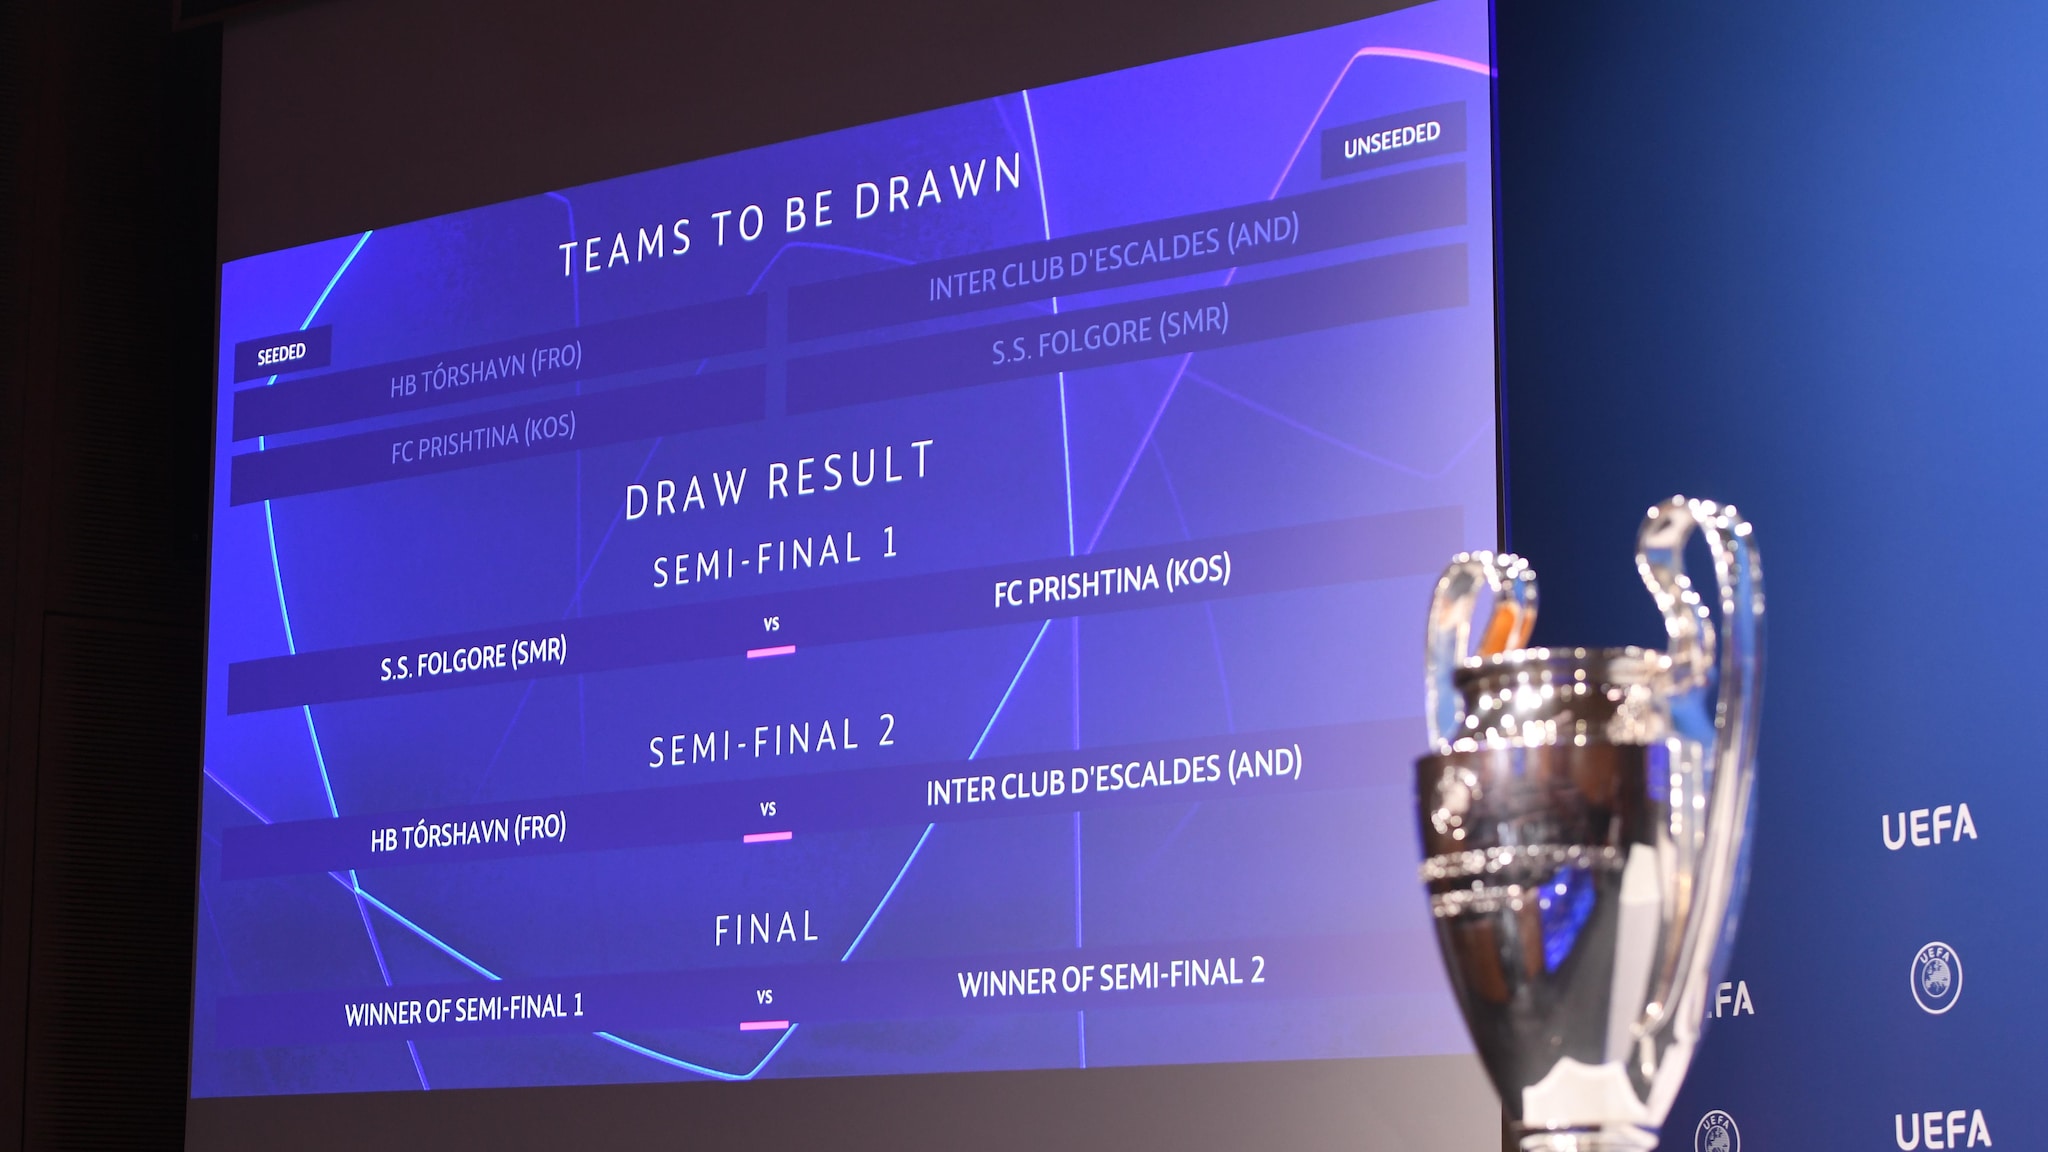 Sorteio da fase preliminar da UEFA Champions League | UEFA Champions League  2021/22 | UEFA.com